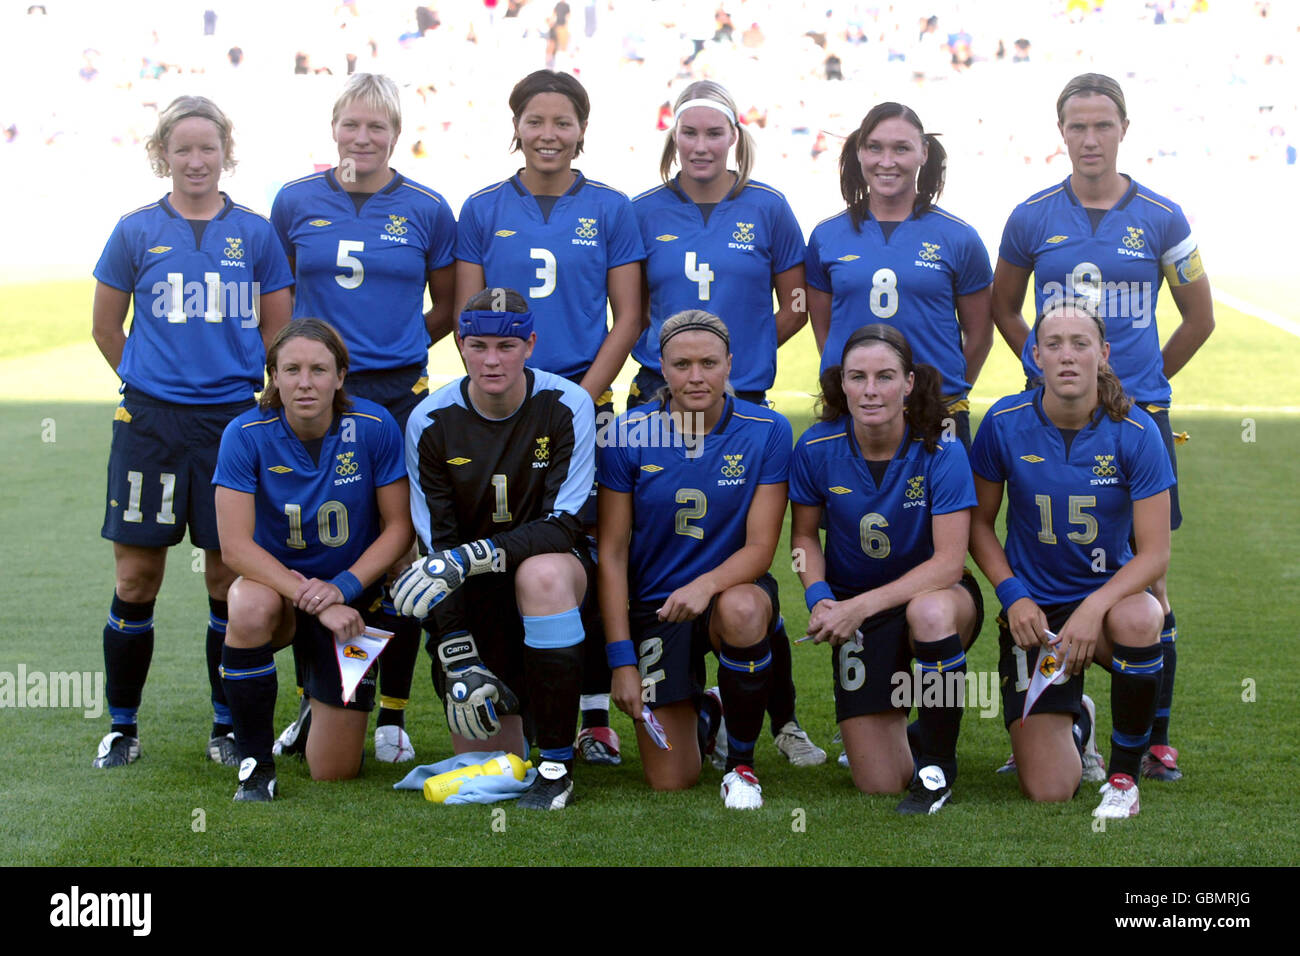 [Imagen: soccer-athens-olympic-games-2004-womens-...GBMRJG.jpg]